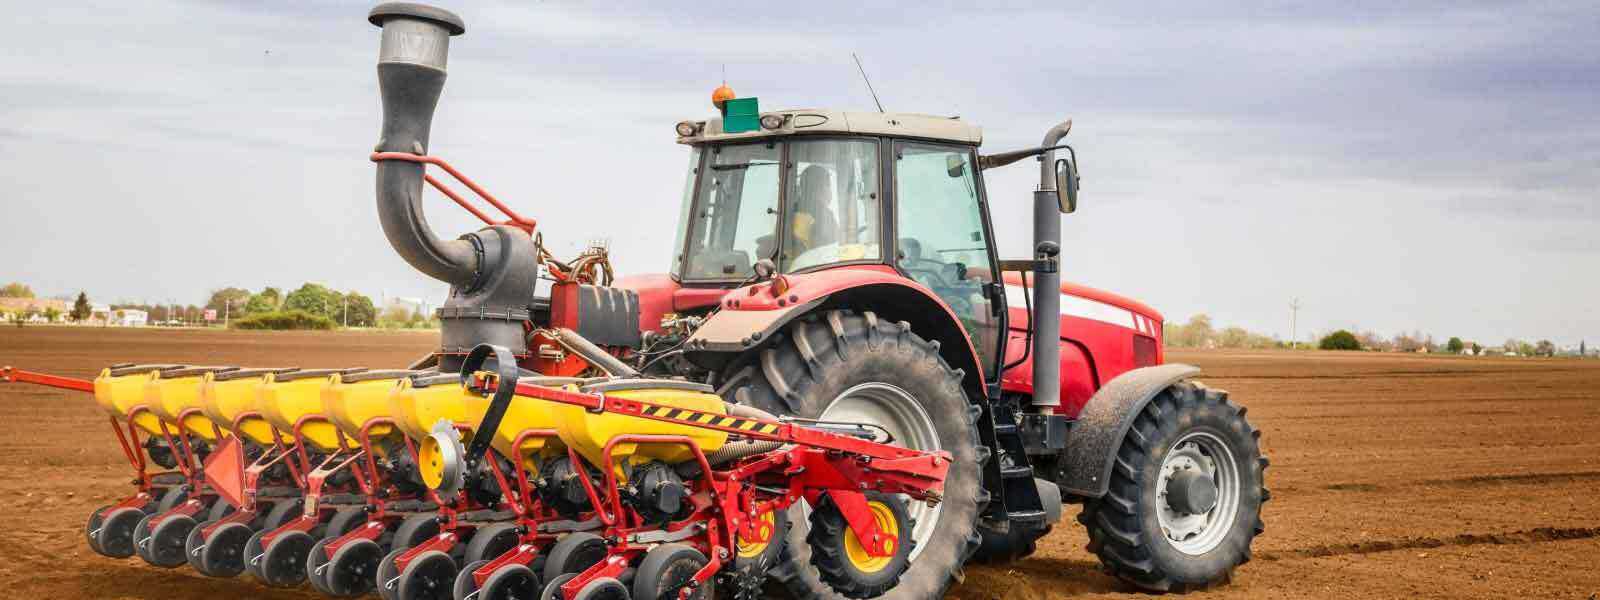 Tractor agrícola preparando el suelo para la siembra